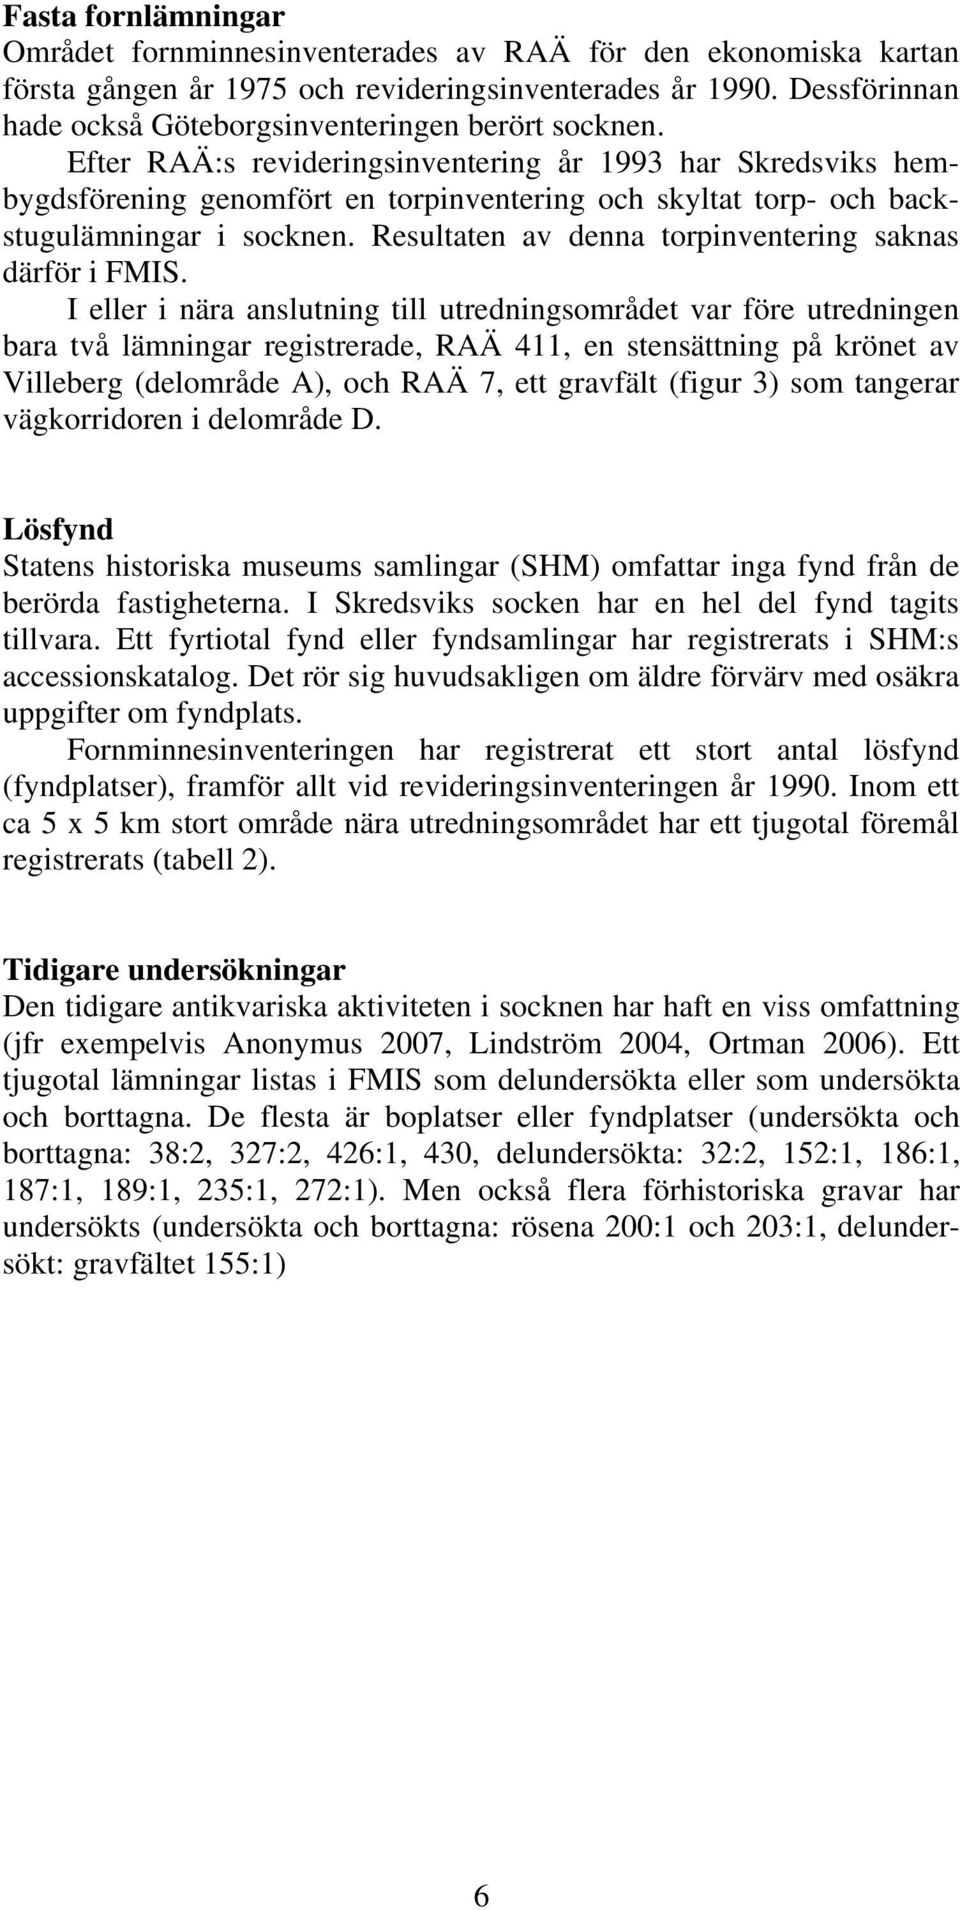 Efter RAÄ:s revideringsinventering år 1993 har Skredsviks hembygdsförening genomfört en torpinventering och skyltat torp- och backstugulämningar i socknen.